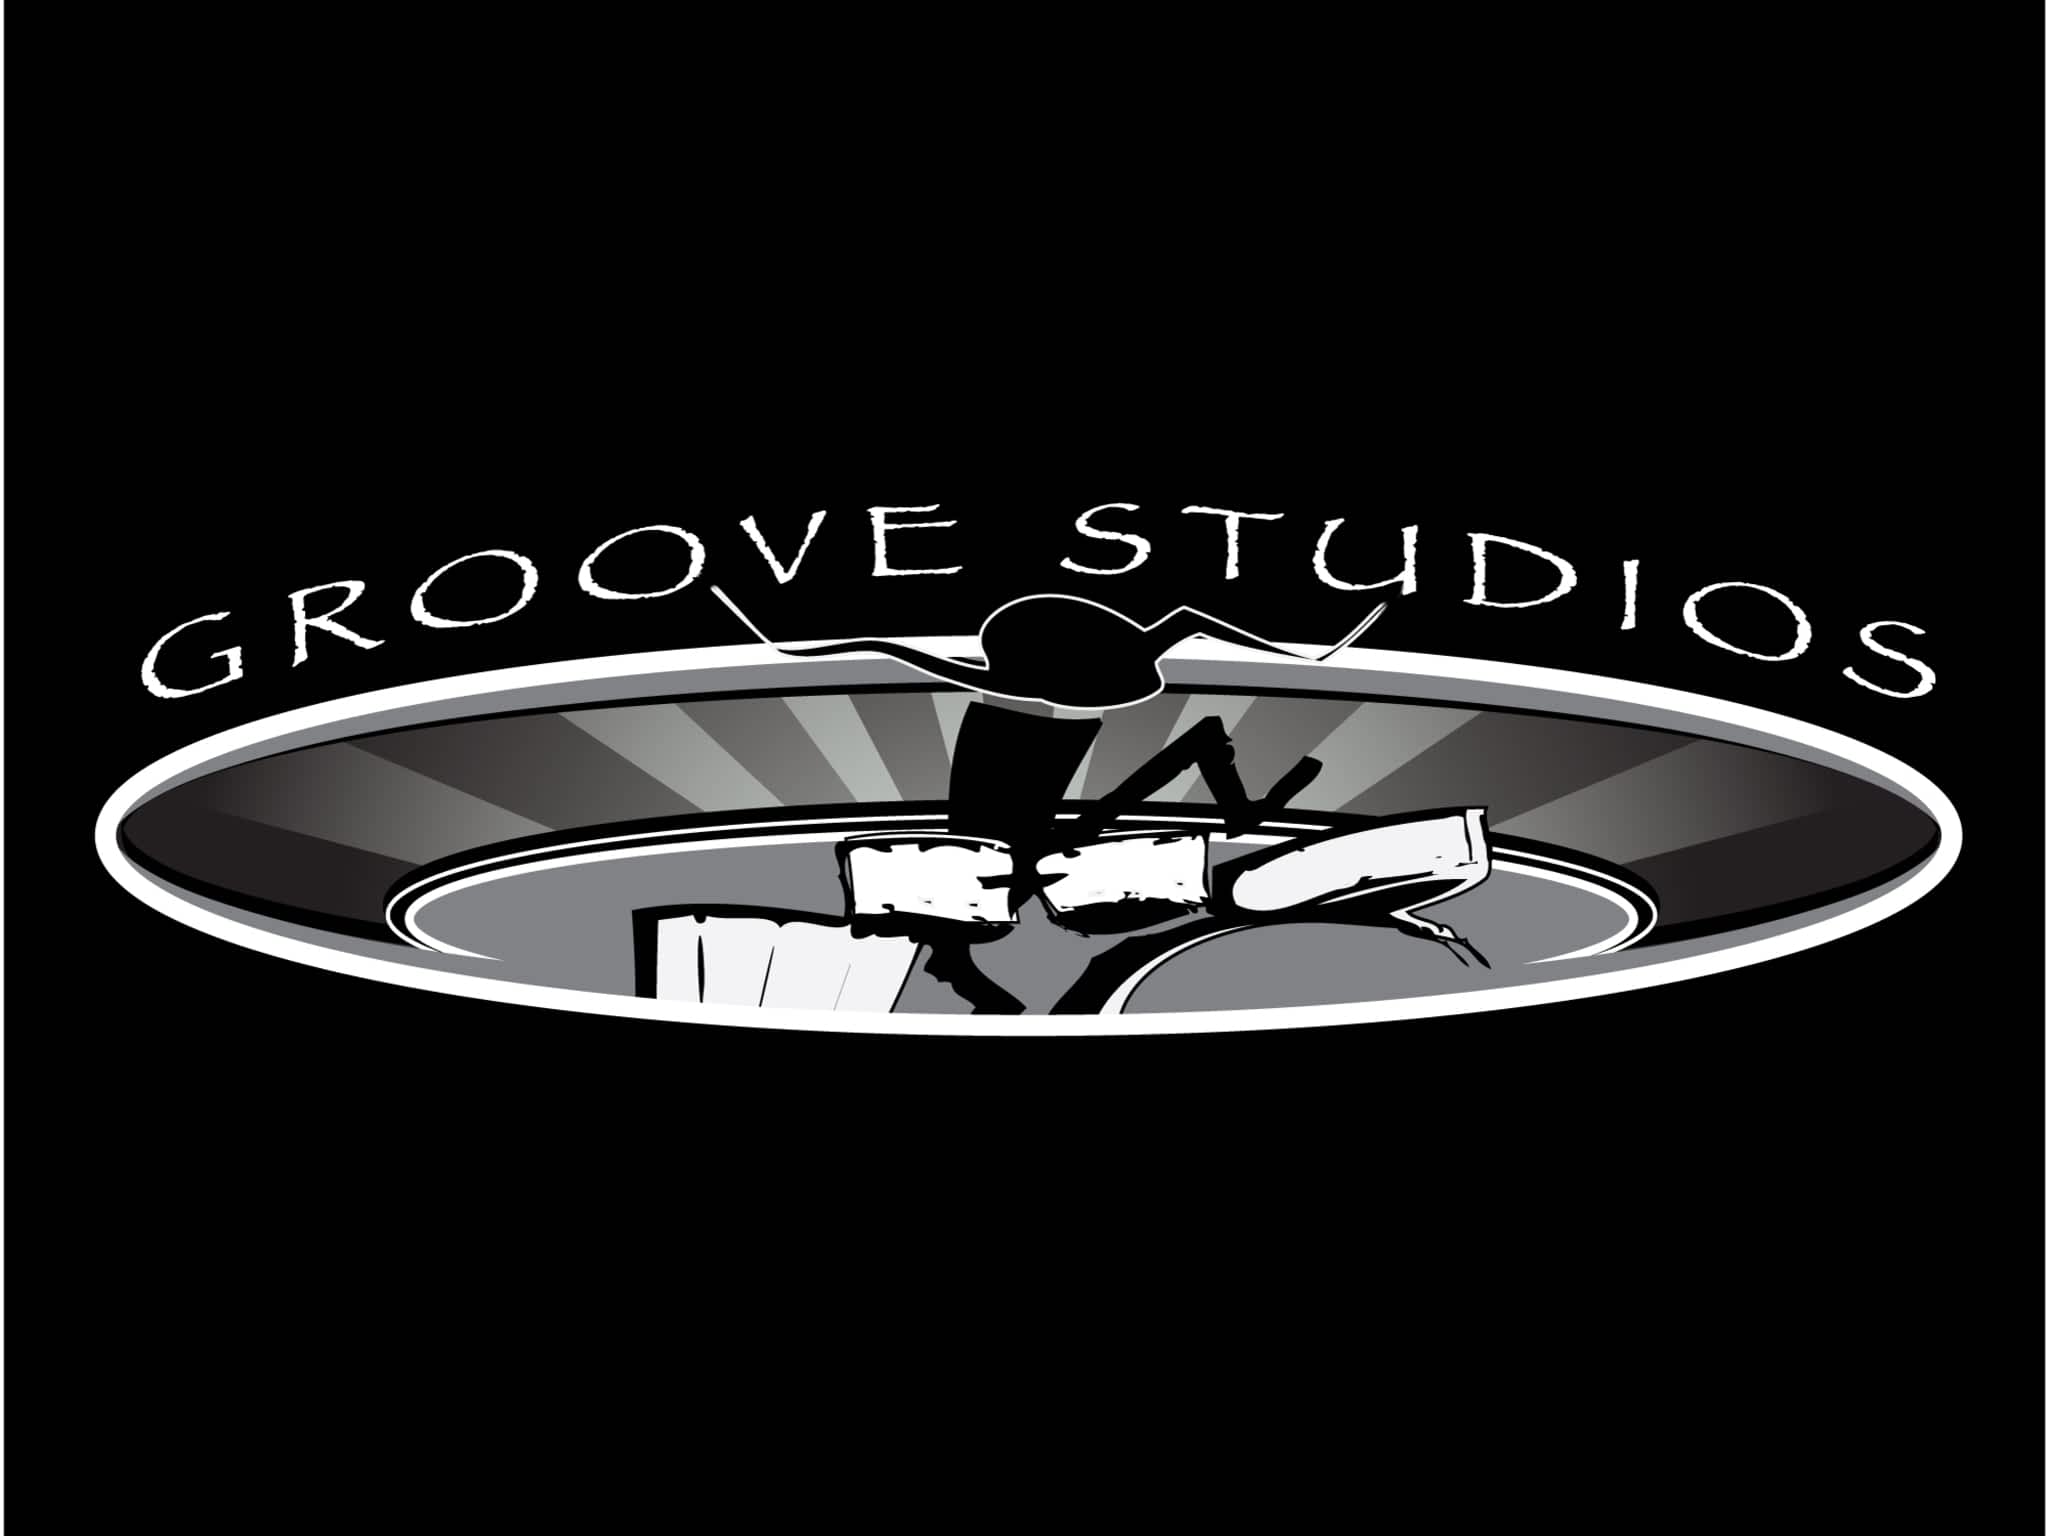 photo Groove Studios Drum Lessons